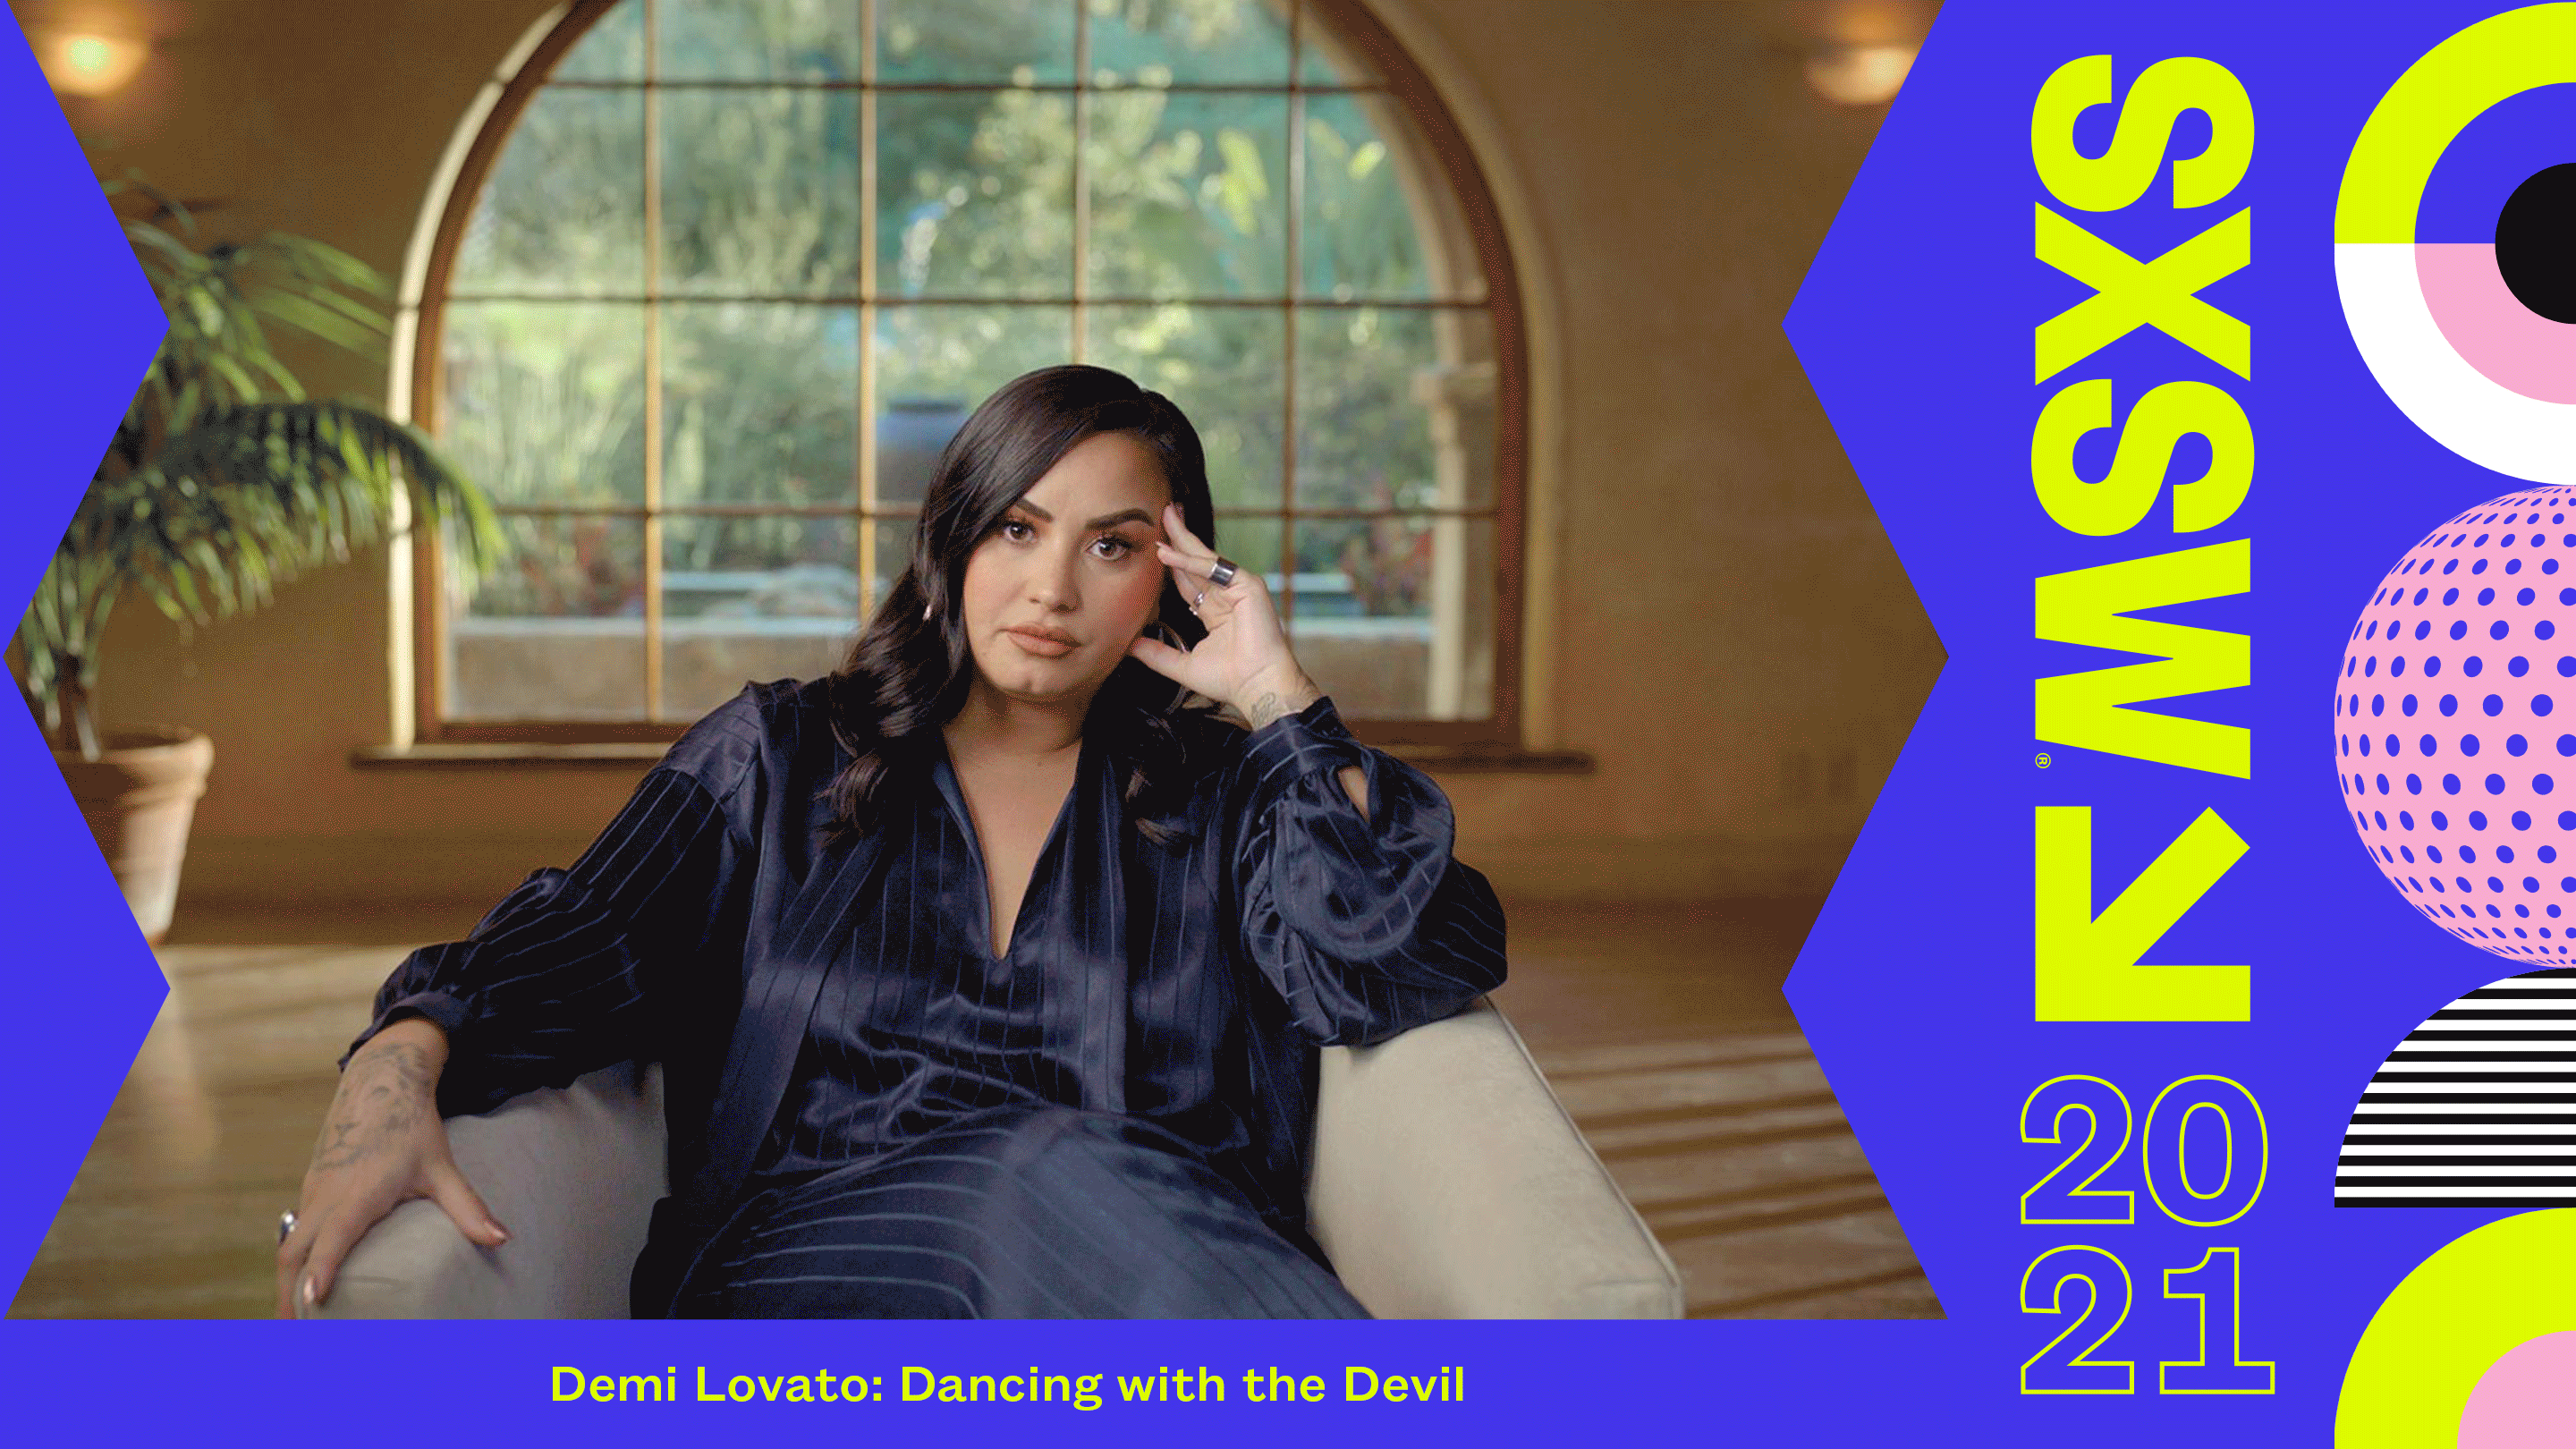 2021 sxsw film festival full lineup announced for online satan the devil